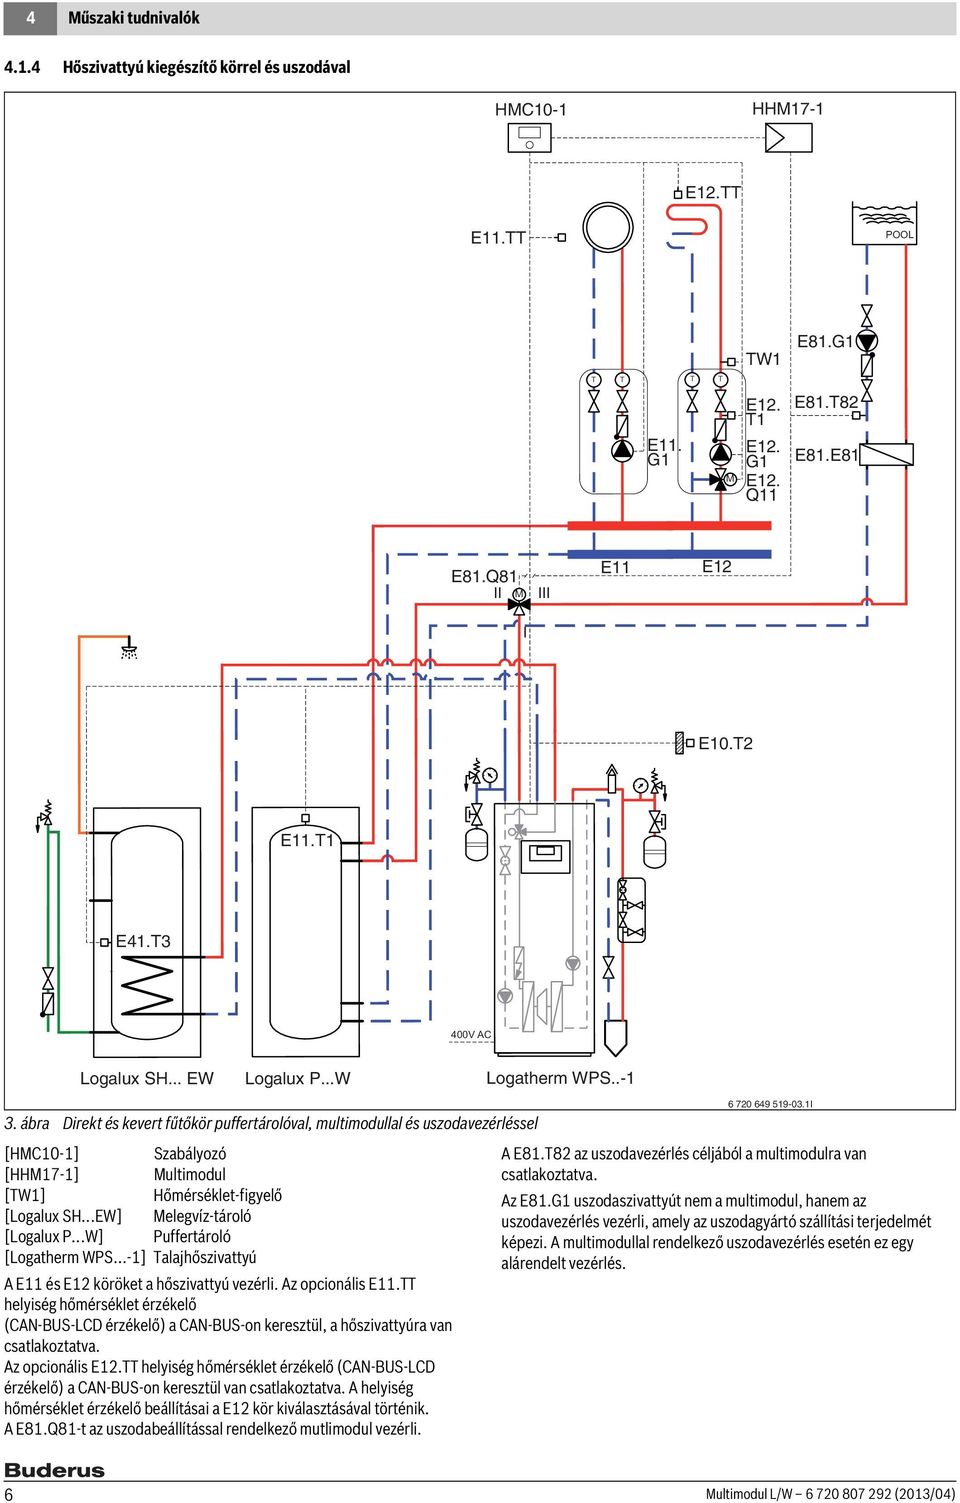 ábra Direkt és kevert fűtőkör puffertárolóval, multimodullal és uszodavezérléssel [HMC10-1] Szabályozó [HHM17-1] Multimodul [TW1] Hőmérséklet-figyelő [Logalux SH...EW] Melegvíz-tároló [Logalux P.